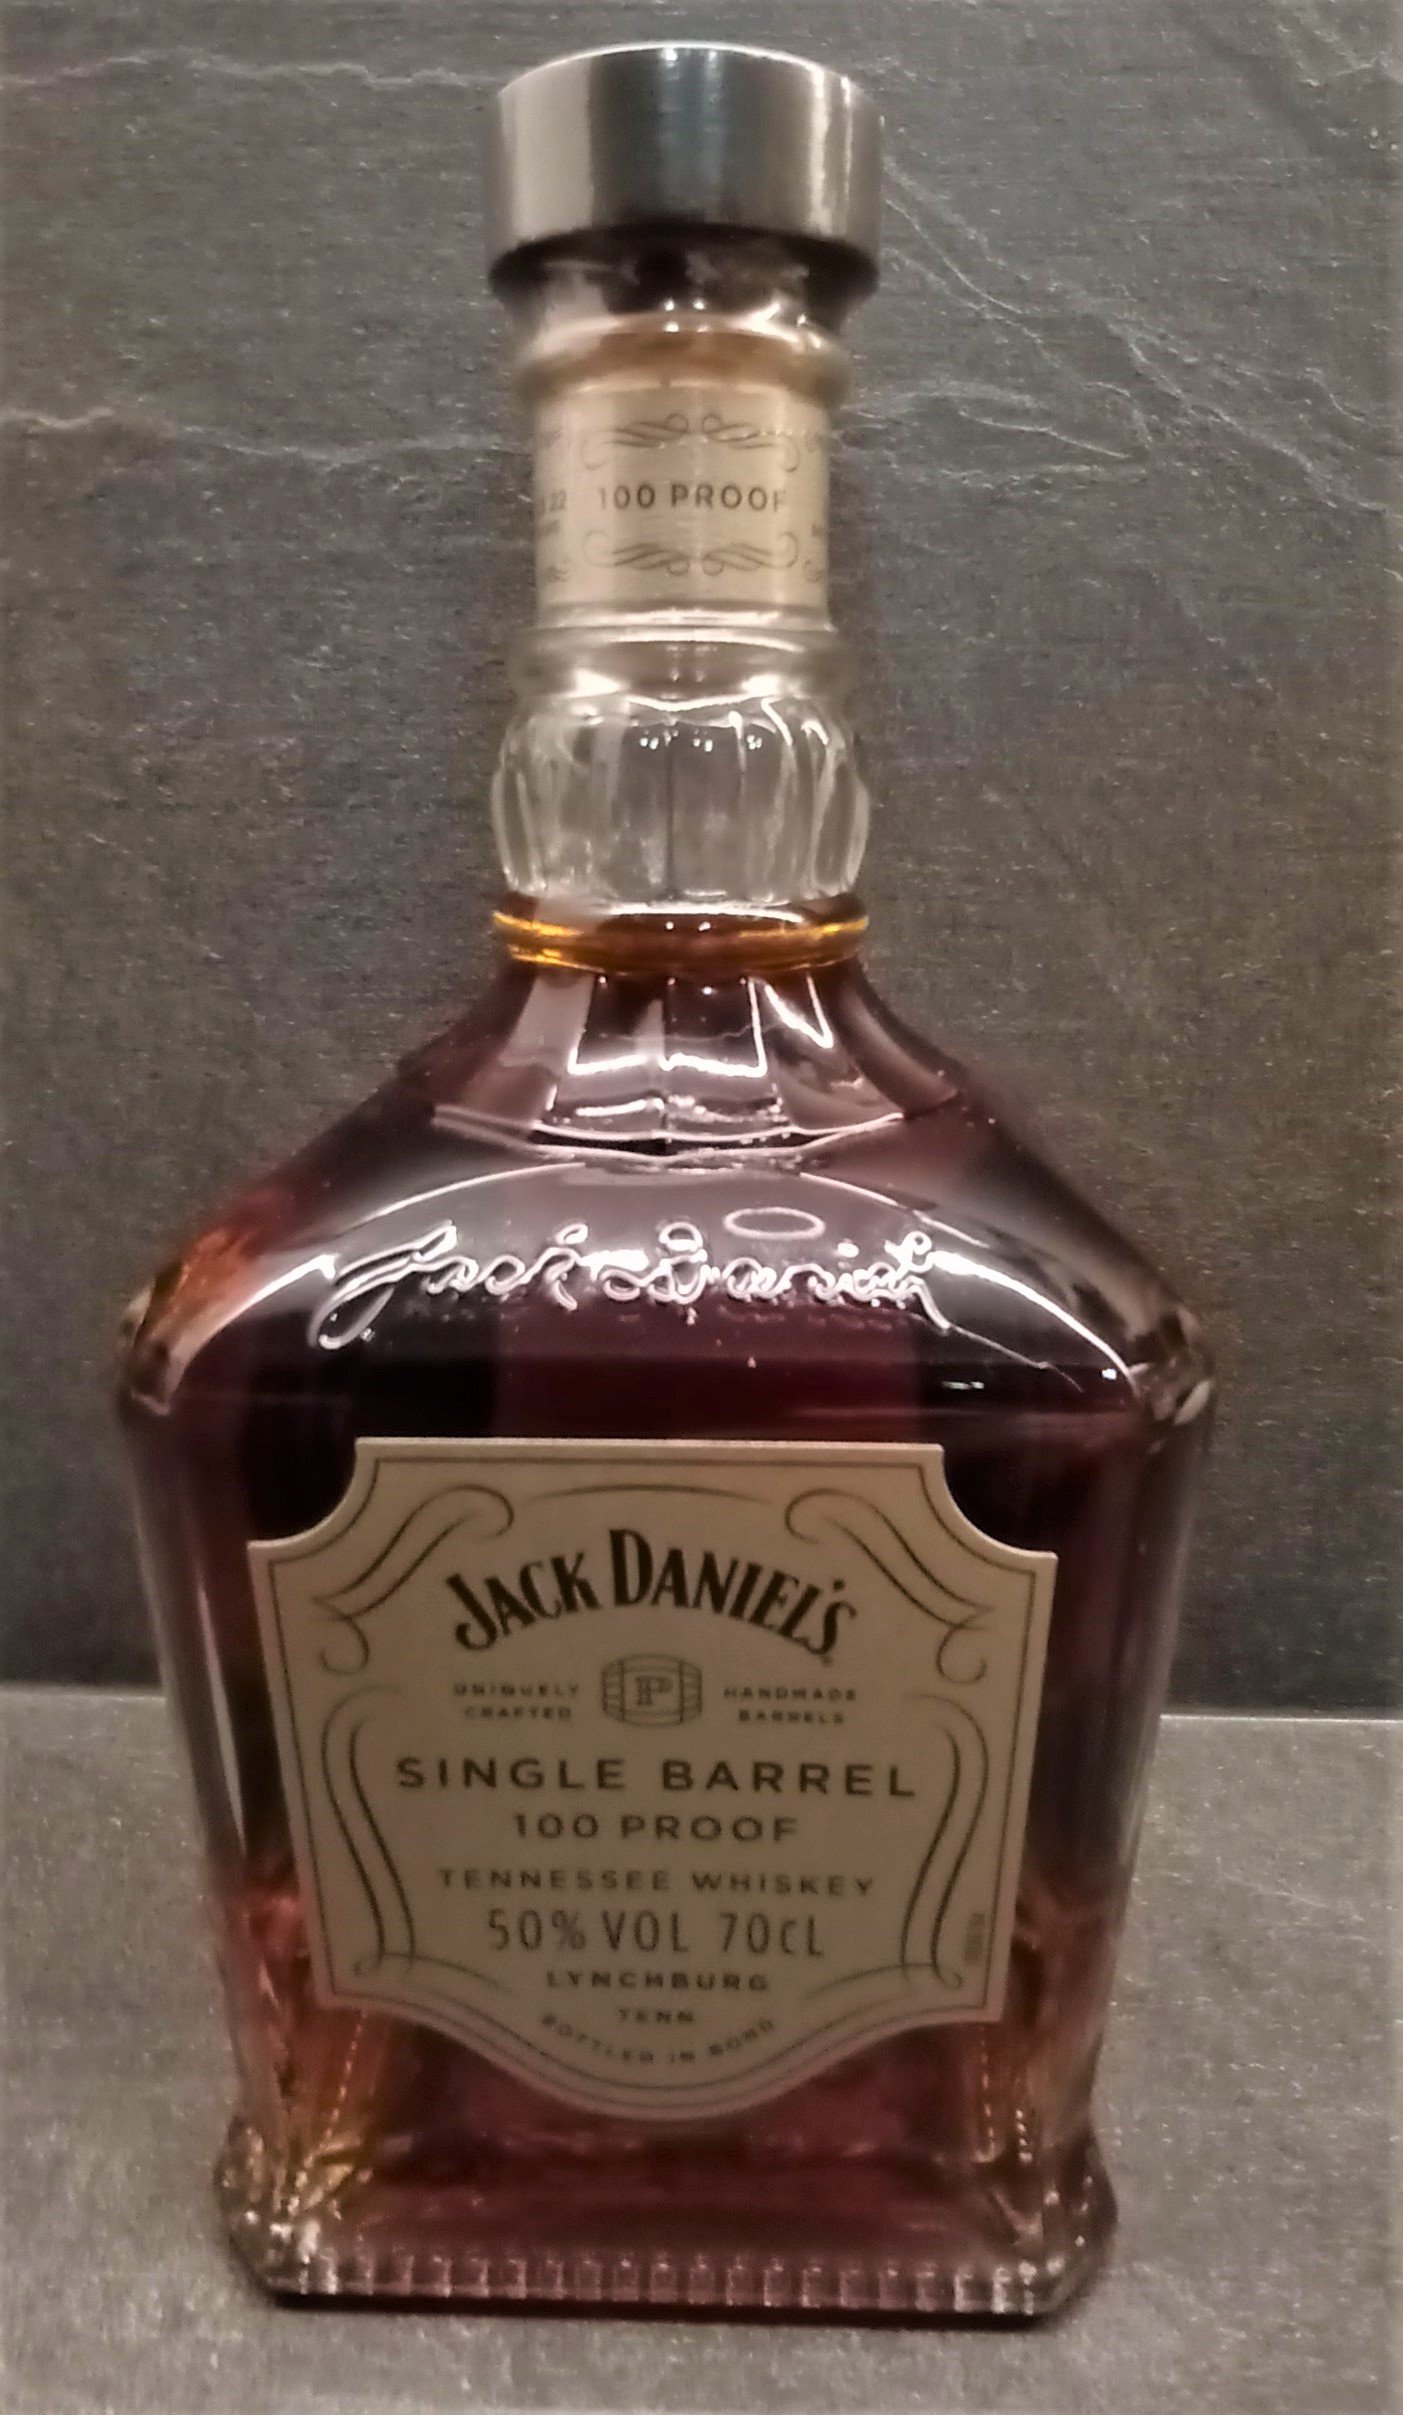 Veteran Bourbon Review: Jack Daniels Single Barrel Barrel Proof